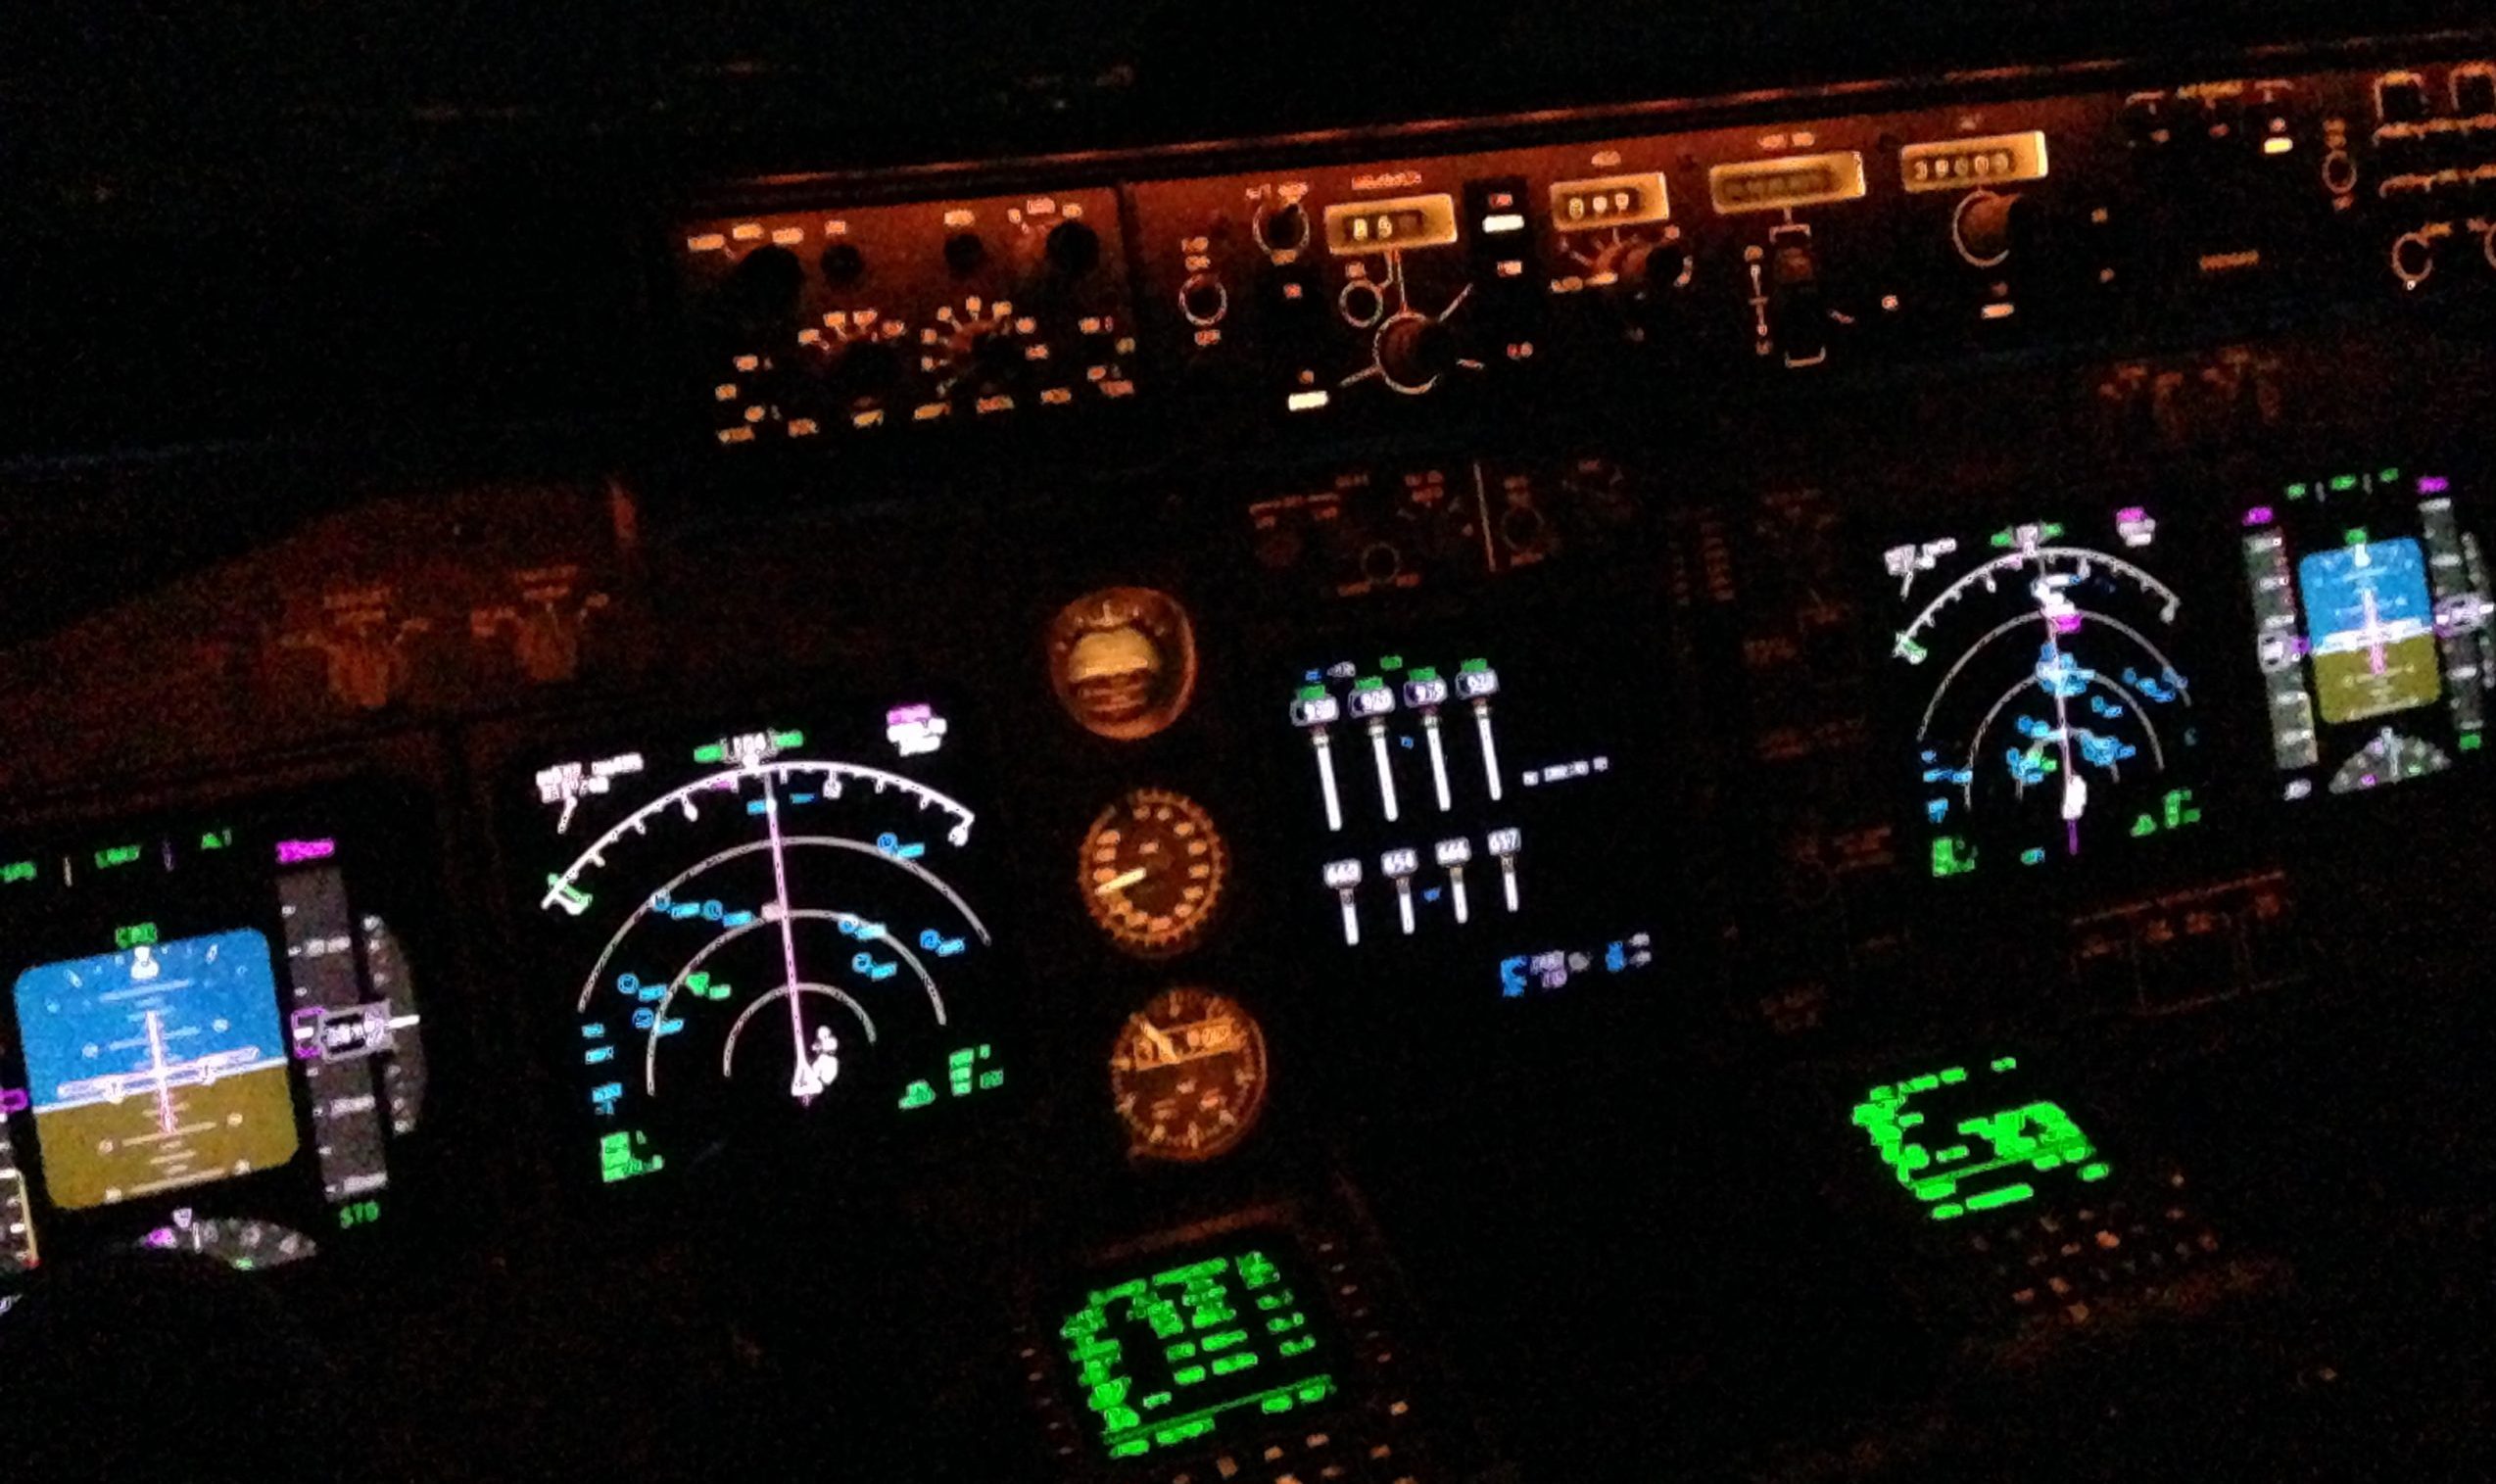 Boeing 747-8i cockpit